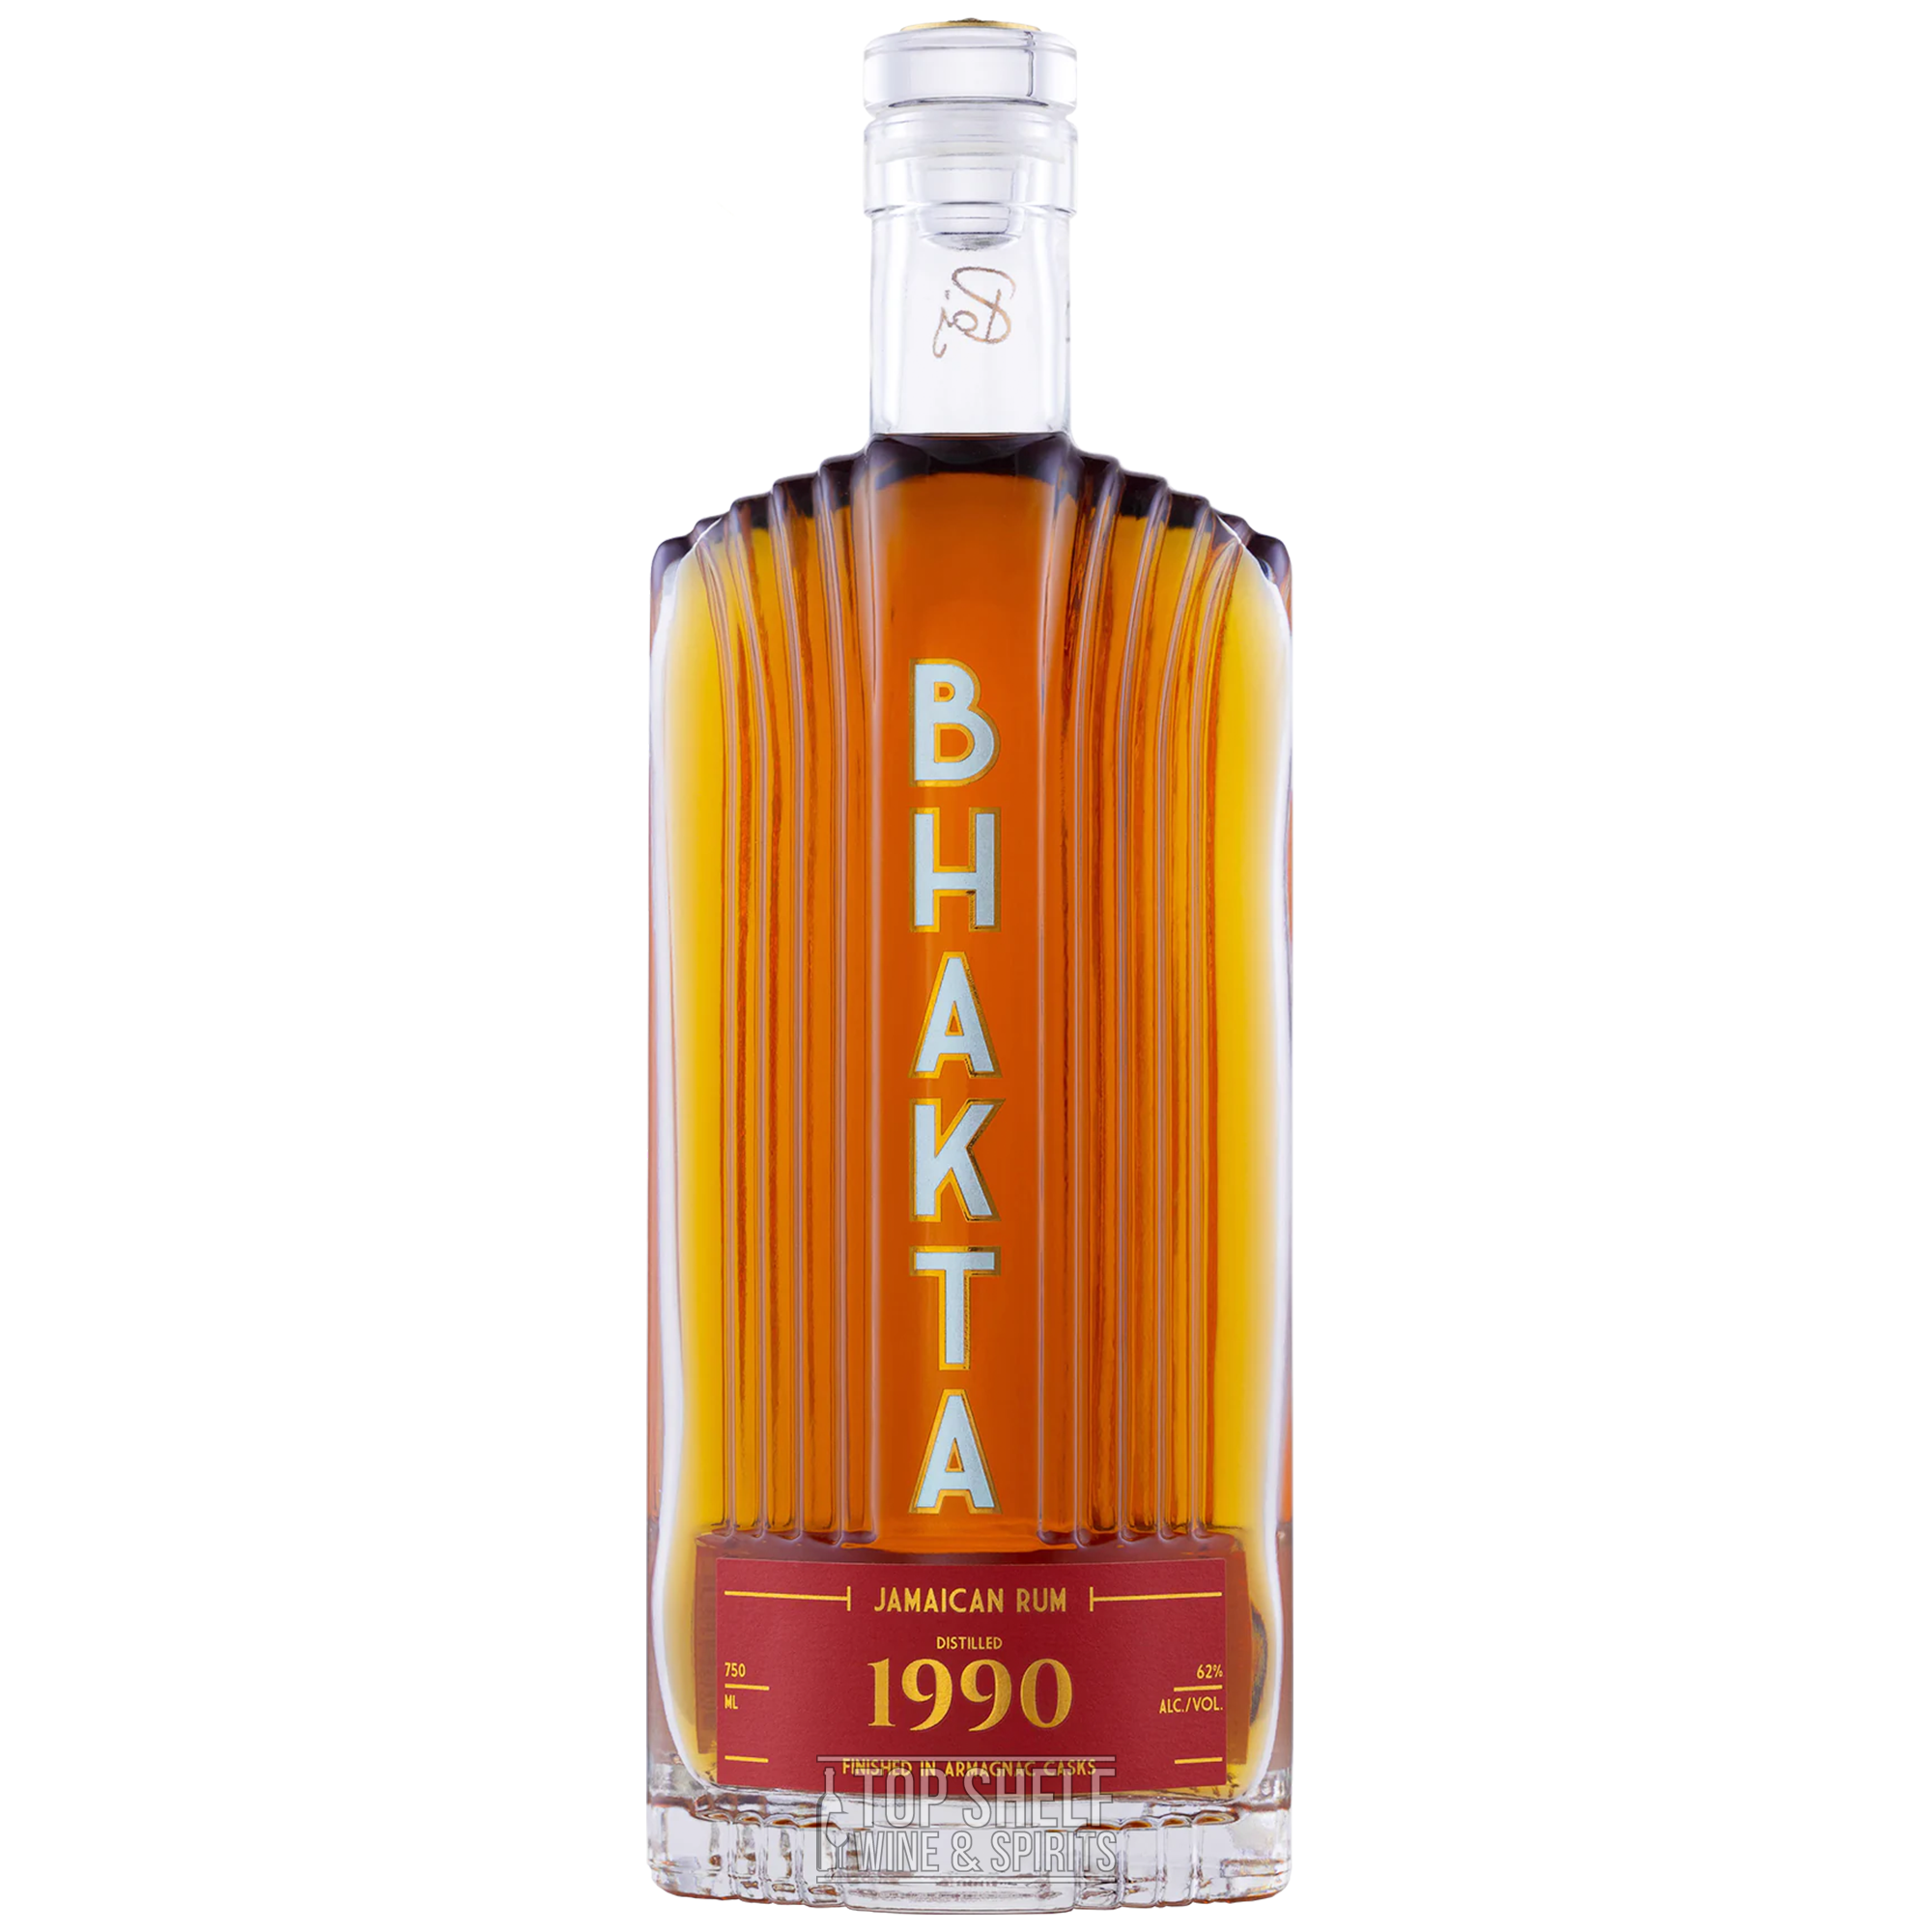 Bhakta 1990 Jamaican Rum